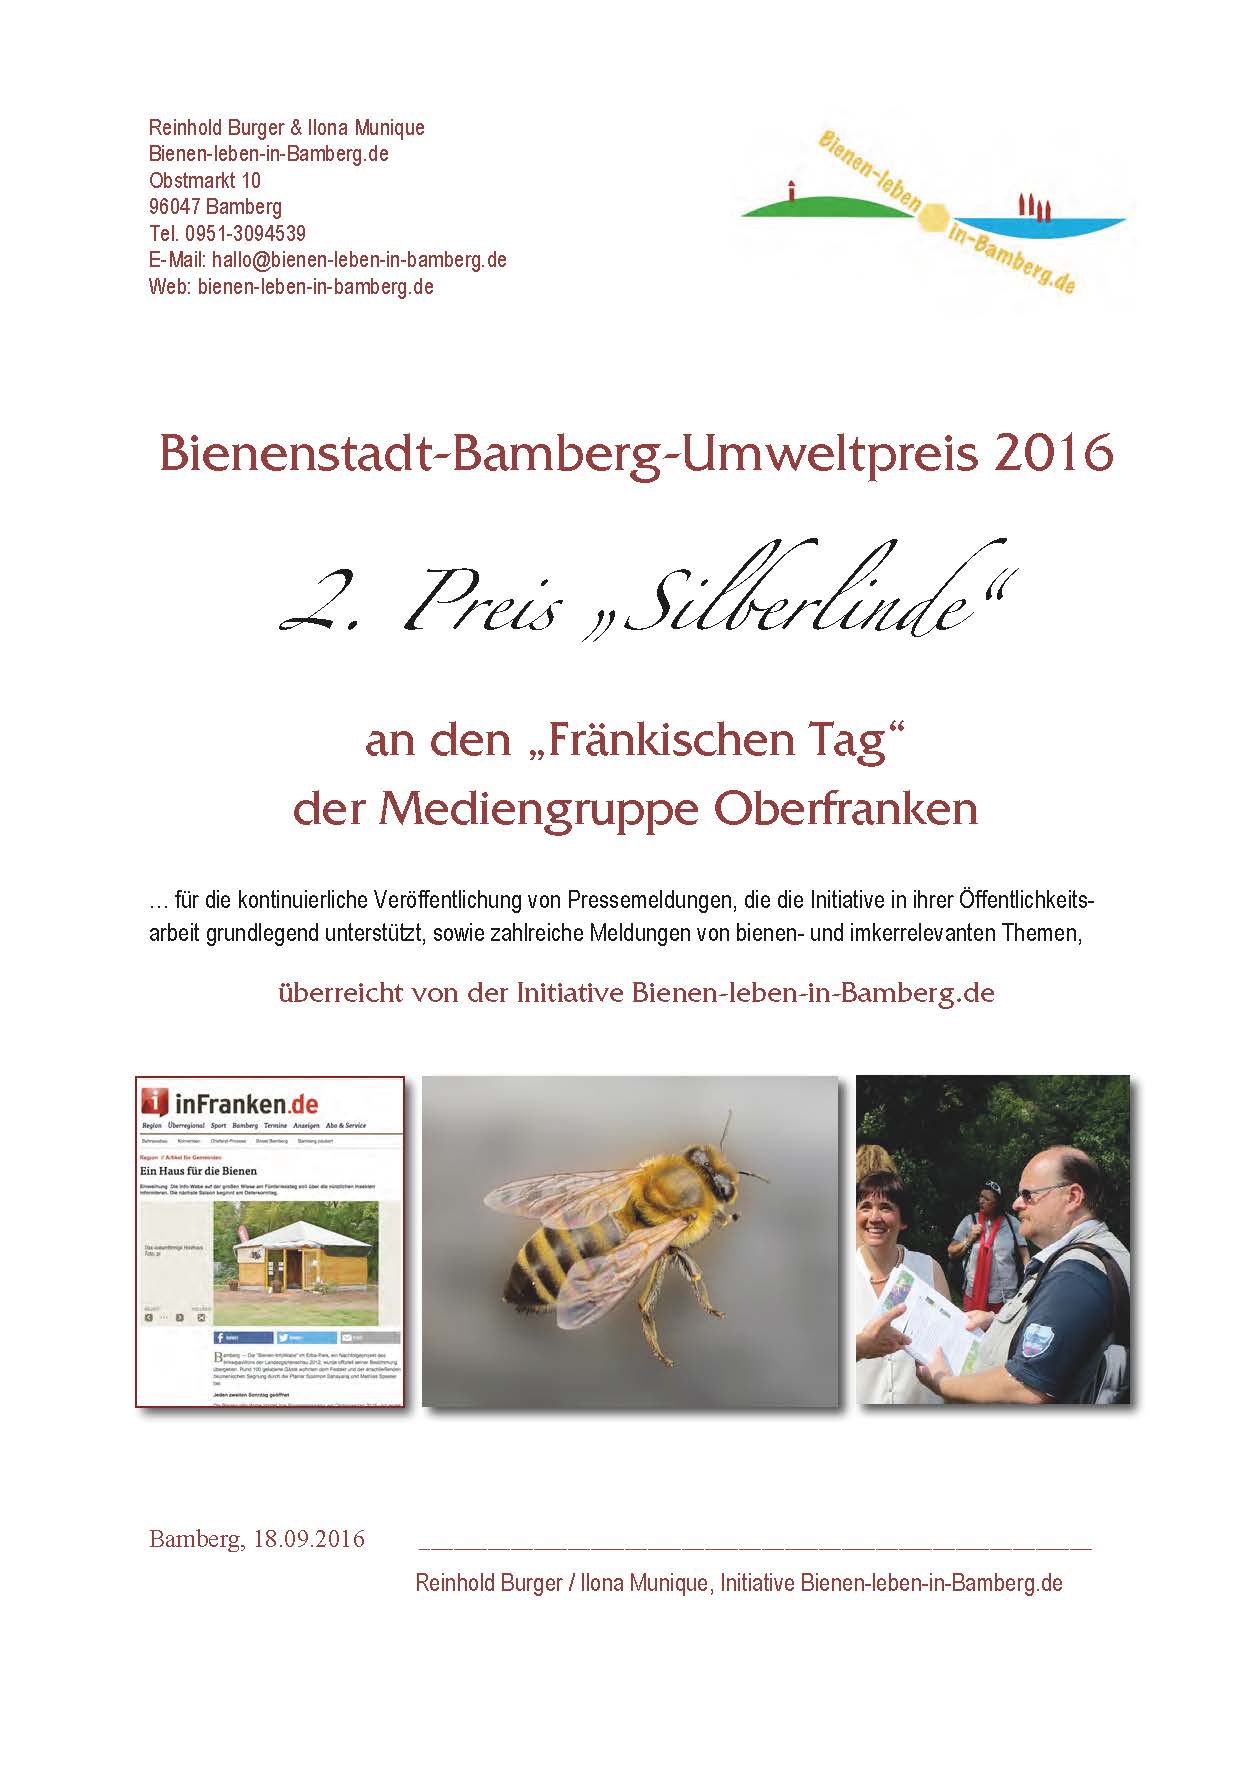 2. Preis Bienenstadt-Bamberg-Umweltpreis 2016 von Bienen-leben-in-Bamberg.de